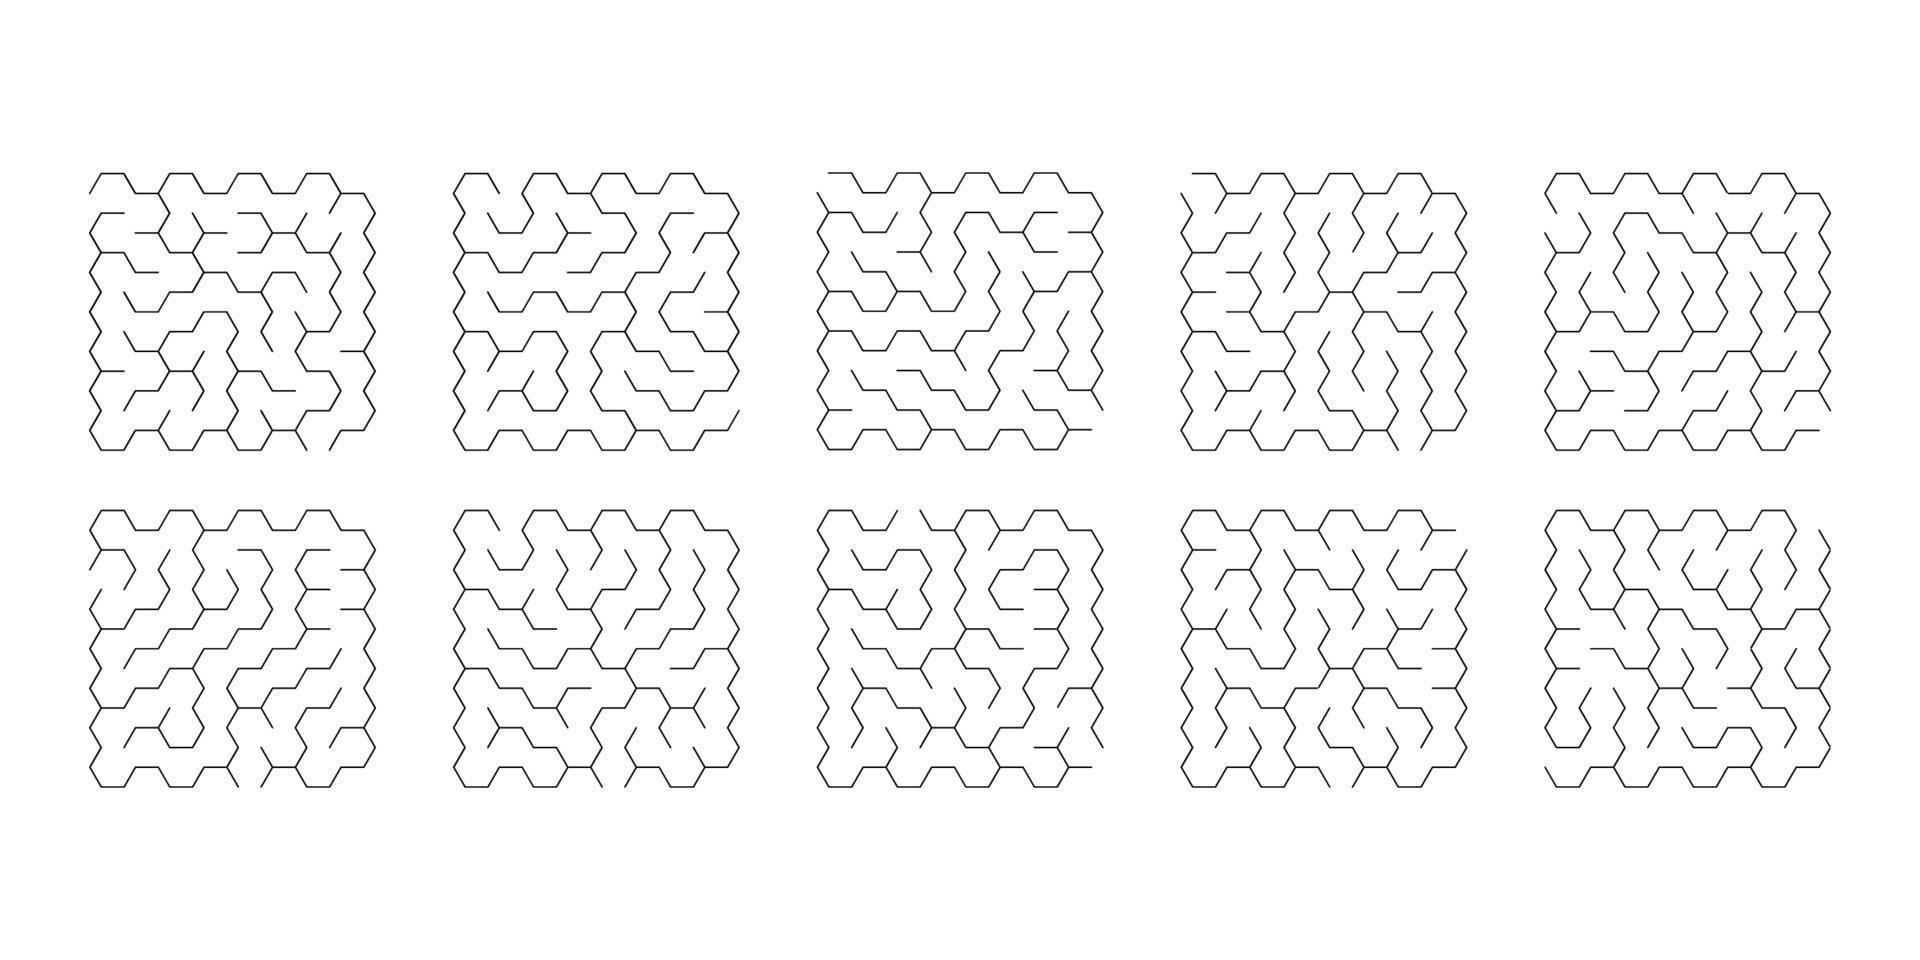 vektorillustration av uppsättning med 10 labyrinter av sexhörningar för barn vektor